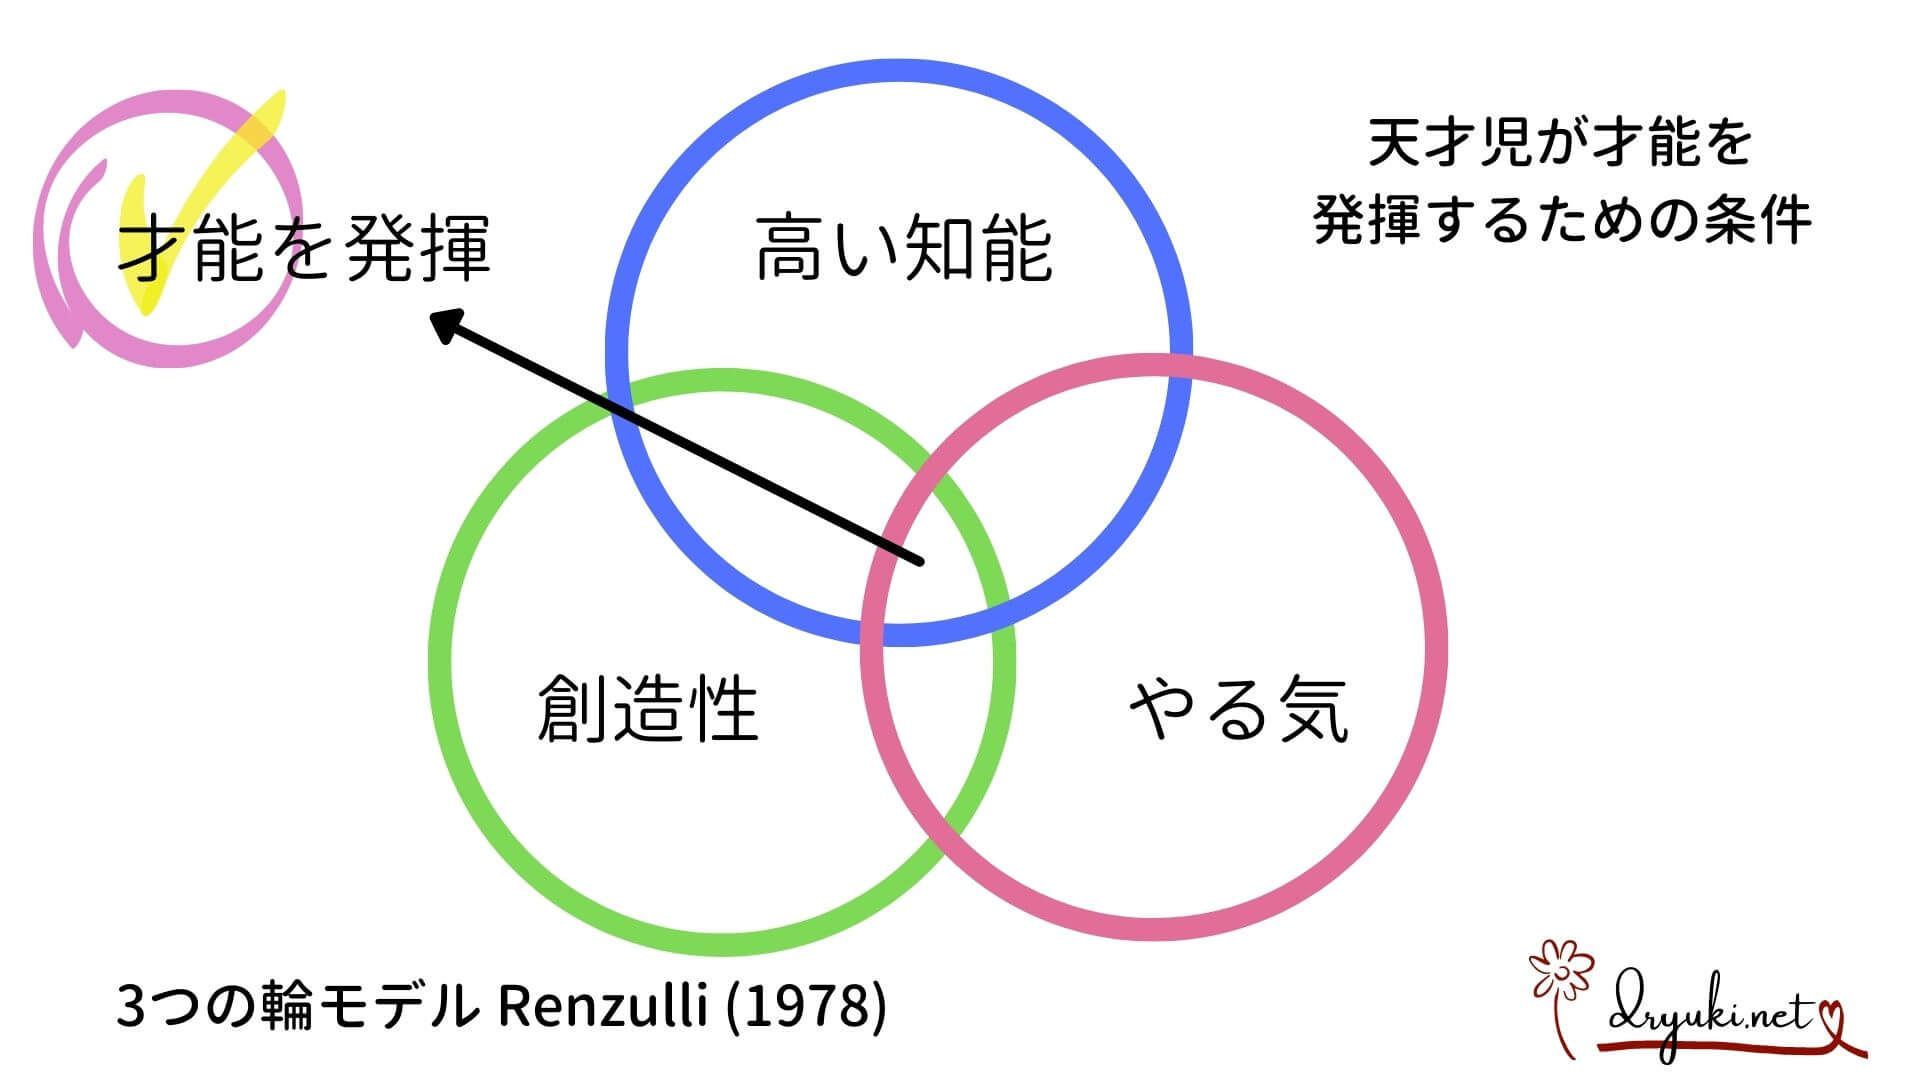 Renzulliの「３つの輪」モデル。天才の知能を総合的に判断し、才能が開く方法を提唱